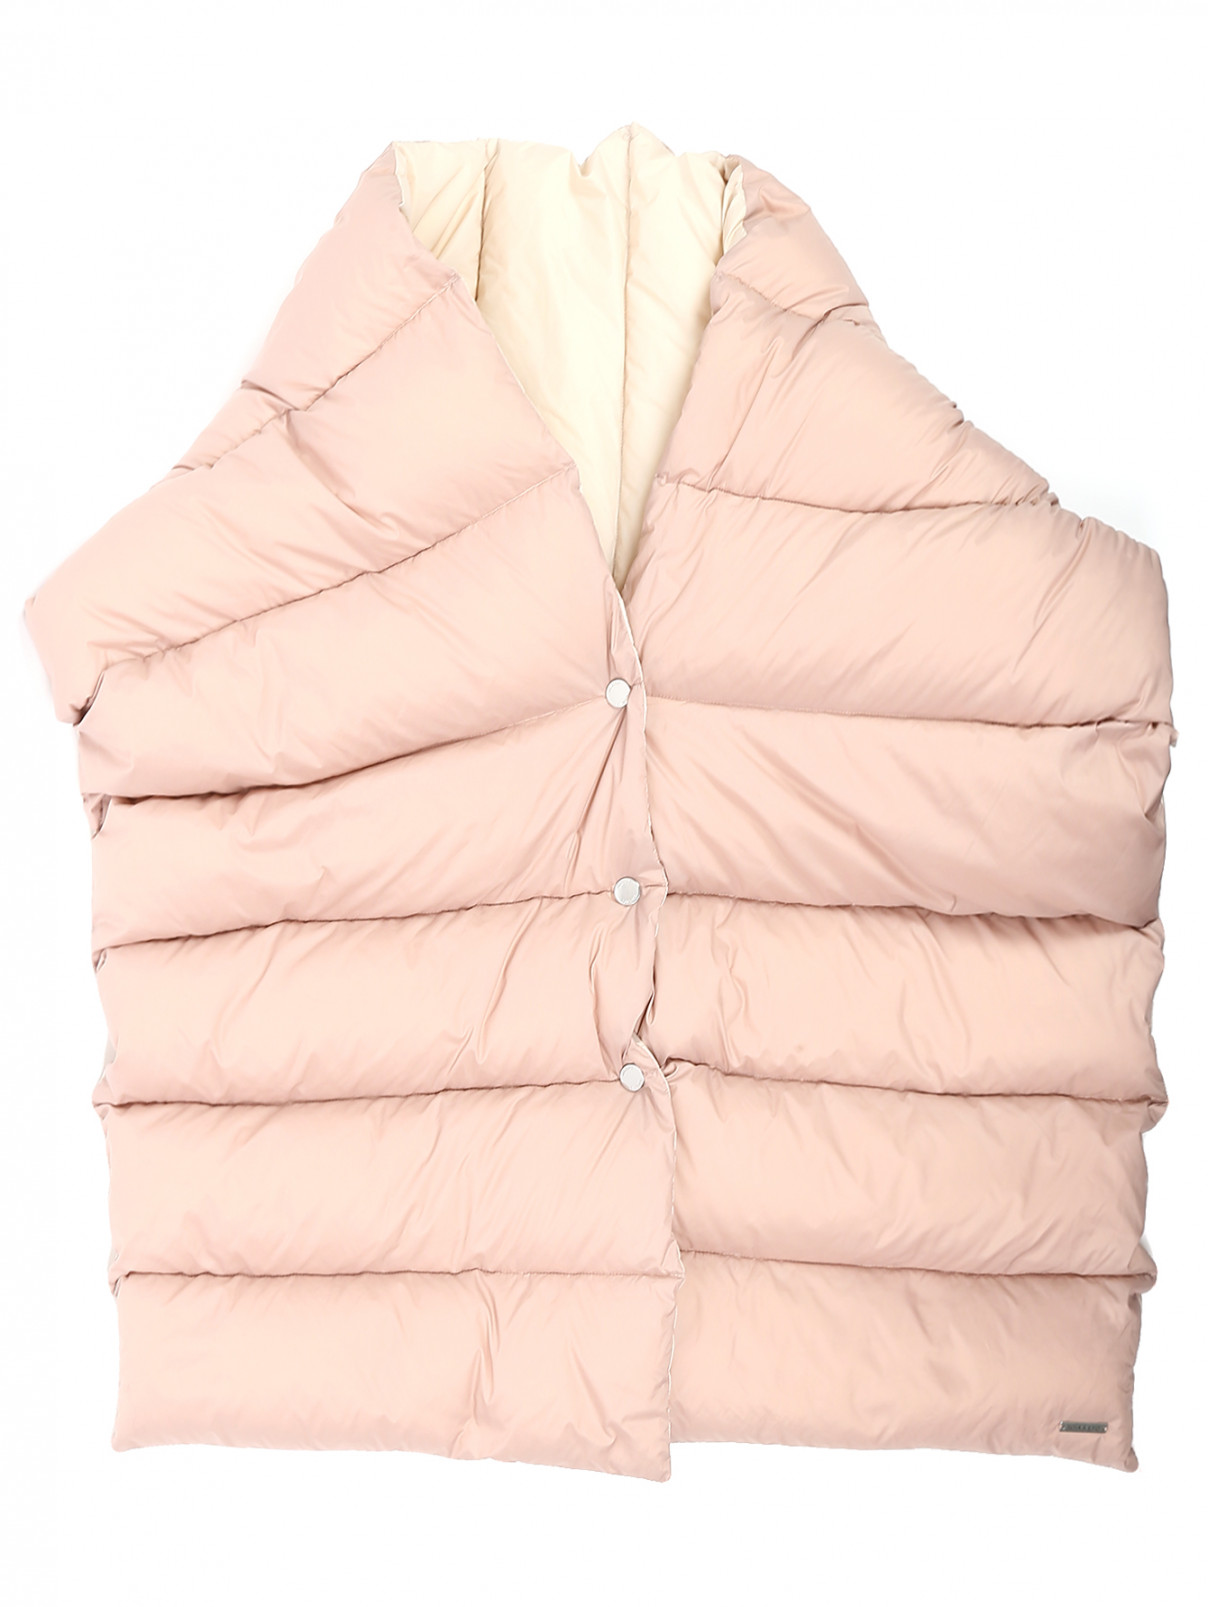 Стеганый шарф Soia&Kyo  –  Общий вид  – Цвет:  Розовый